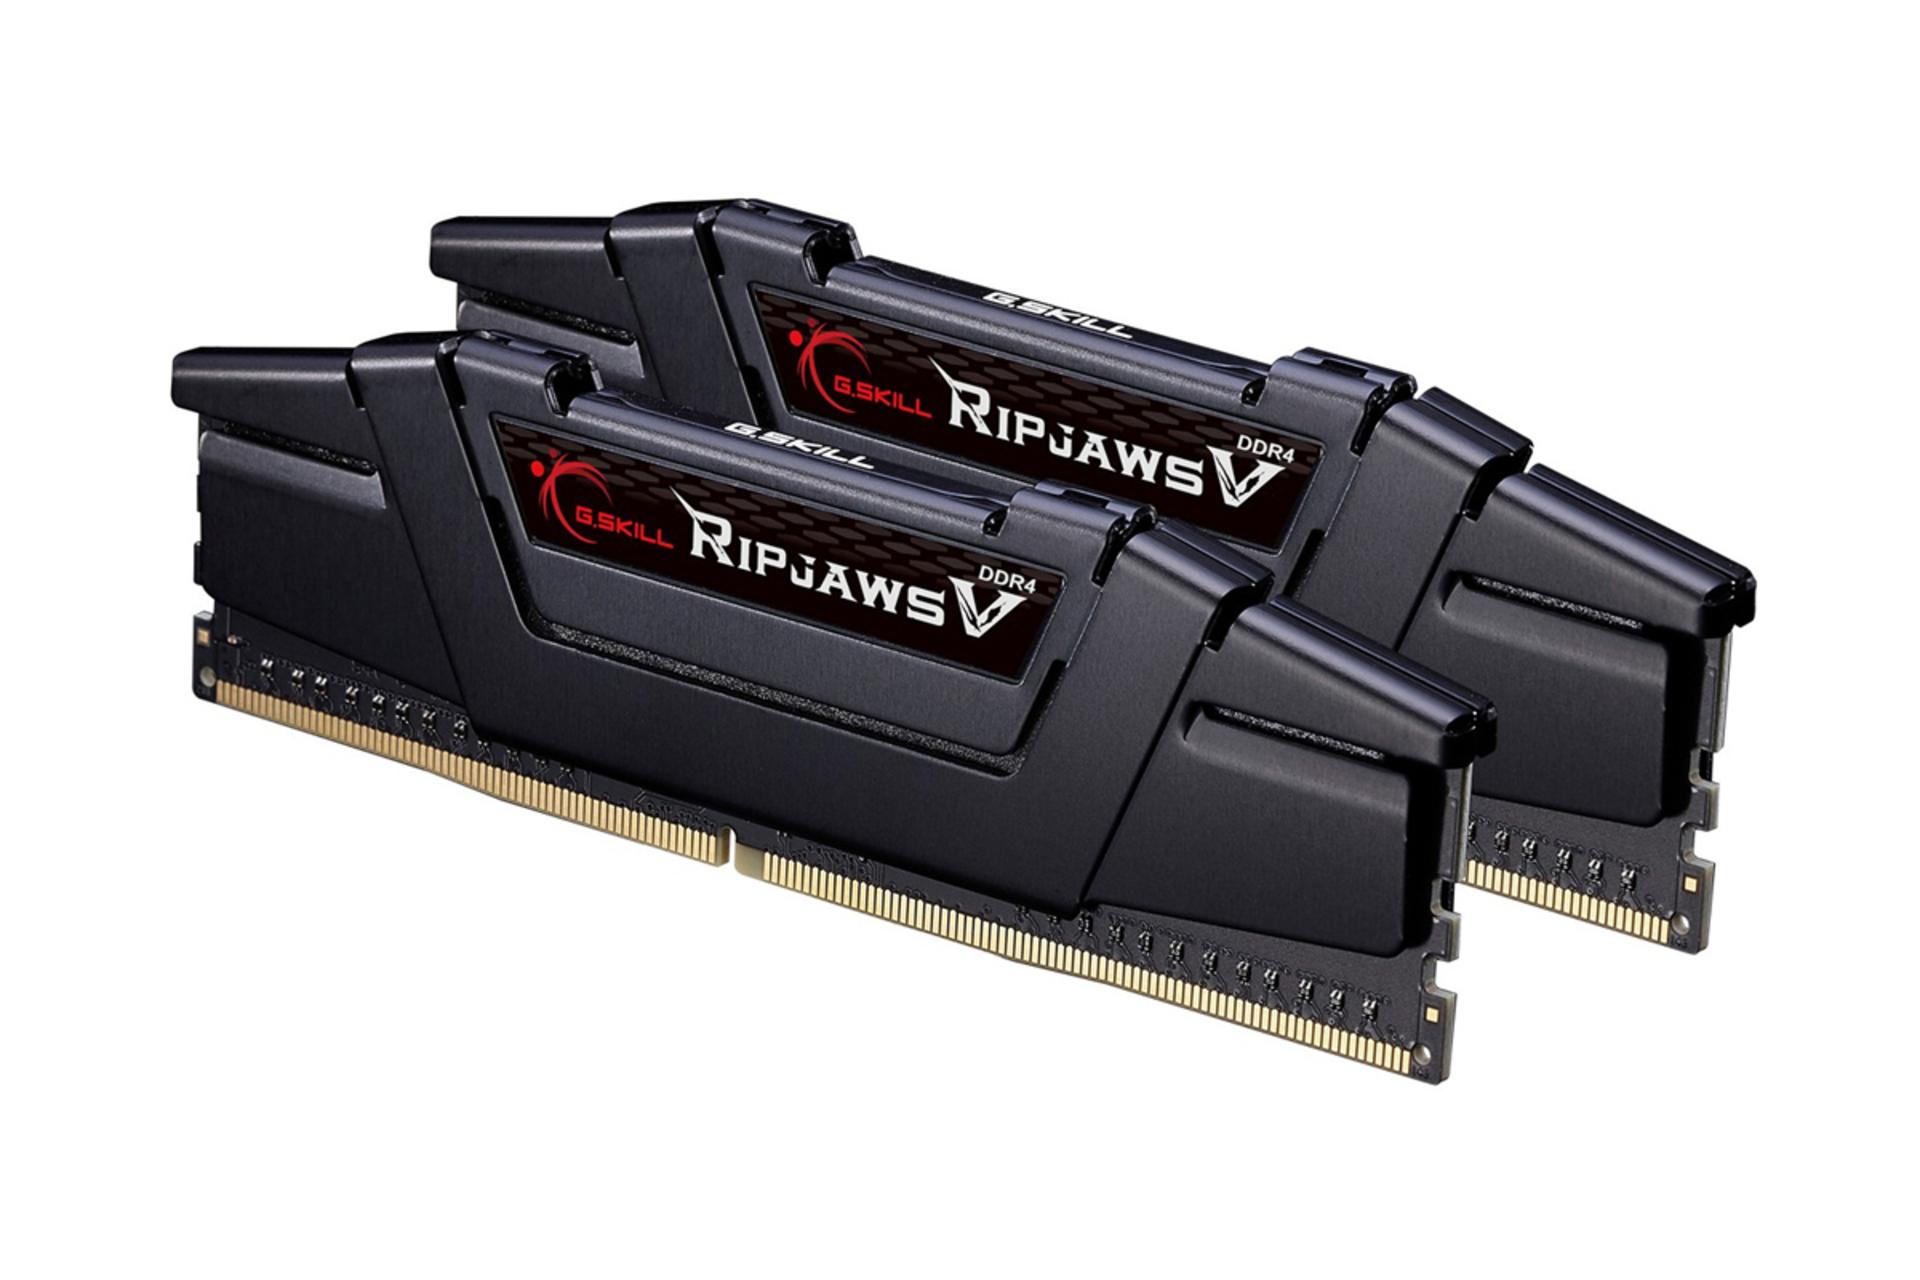 نمای کنار رم جی اسکیل Ripjaws V ظرفیت 64 گیگابایت (2x32) از نوع DDR4-4400